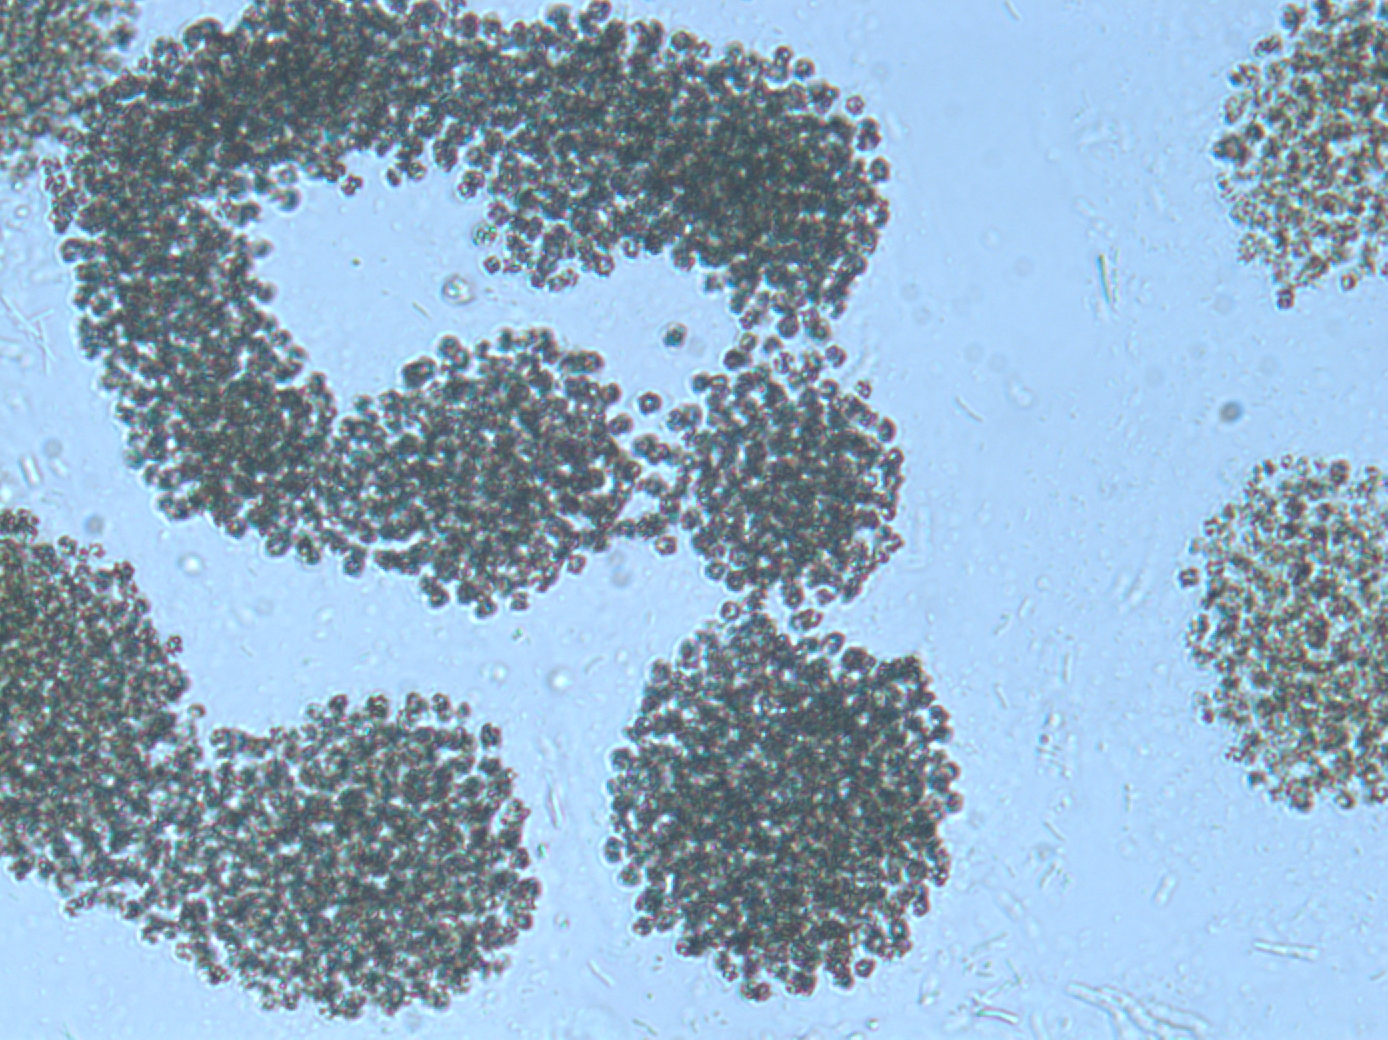 Colonias de Microcystis aeruginosa del embalse de las Conchas, Río Limia, Orense. También se observan bacterias en su mayoría coliformes fecales. Foto: E. Costas.